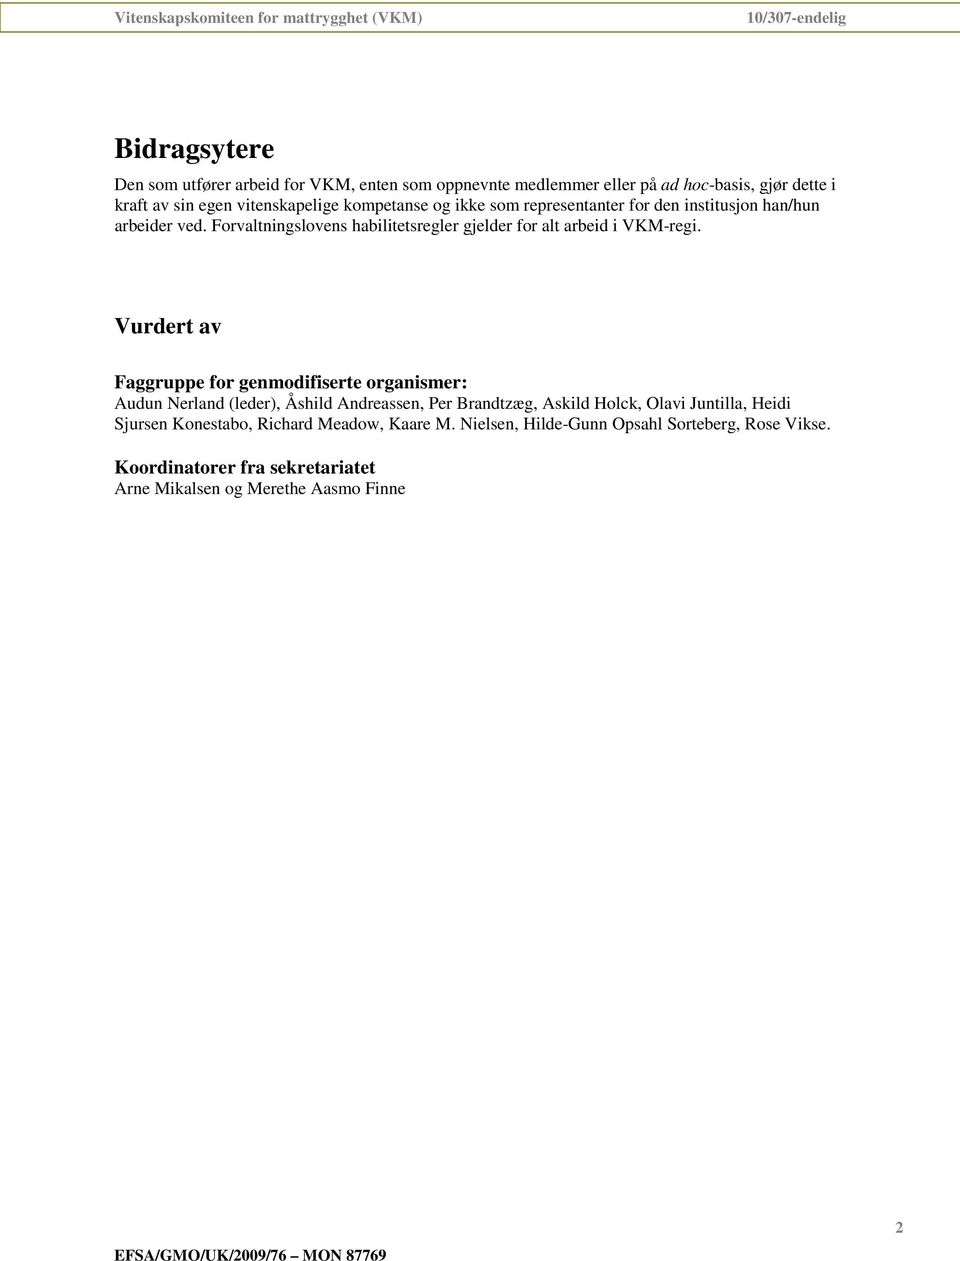 Vurdert av Faggruppe for genmodifiserte organismer: Audun Nerland (leder), Åshild Andreassen, Per Brandtzæg, Askild Holck, Olavi Juntilla, Heidi